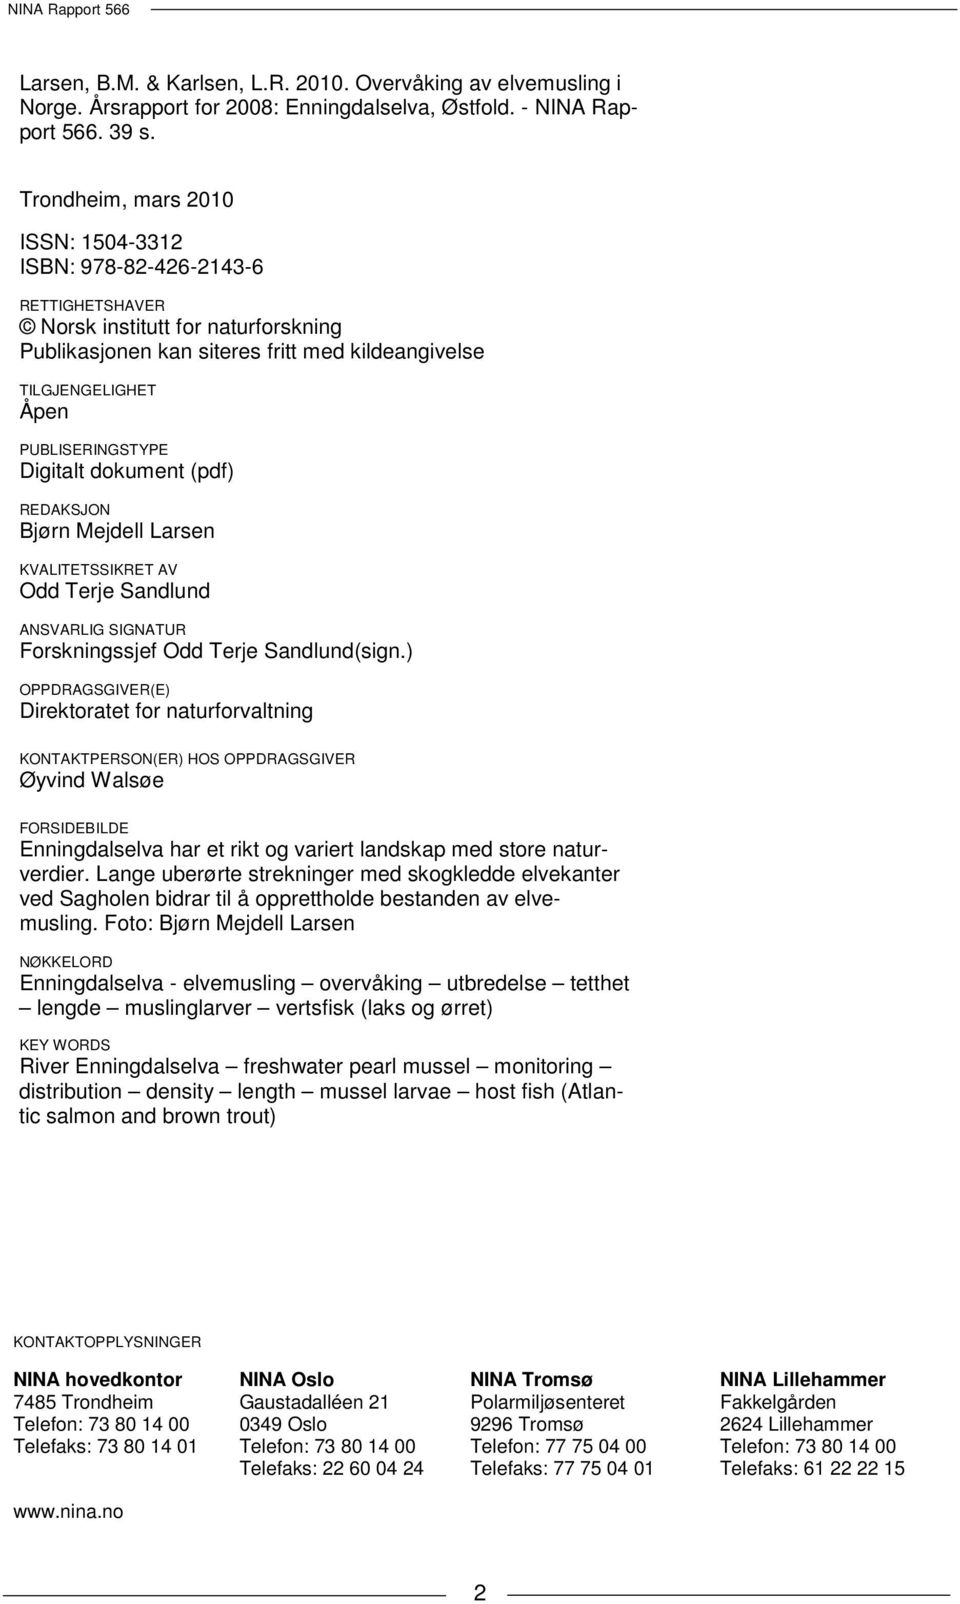 PUBLISERINGSTYPE Digitalt dokument (pdf) REDAKSJON Bjørn Mejdell Larsen KVALITETSSIKRET AV Odd Terje Sandlund ANSVARLIG SIGNATUR Forskningssjef Odd Terje Sandlund(sign.